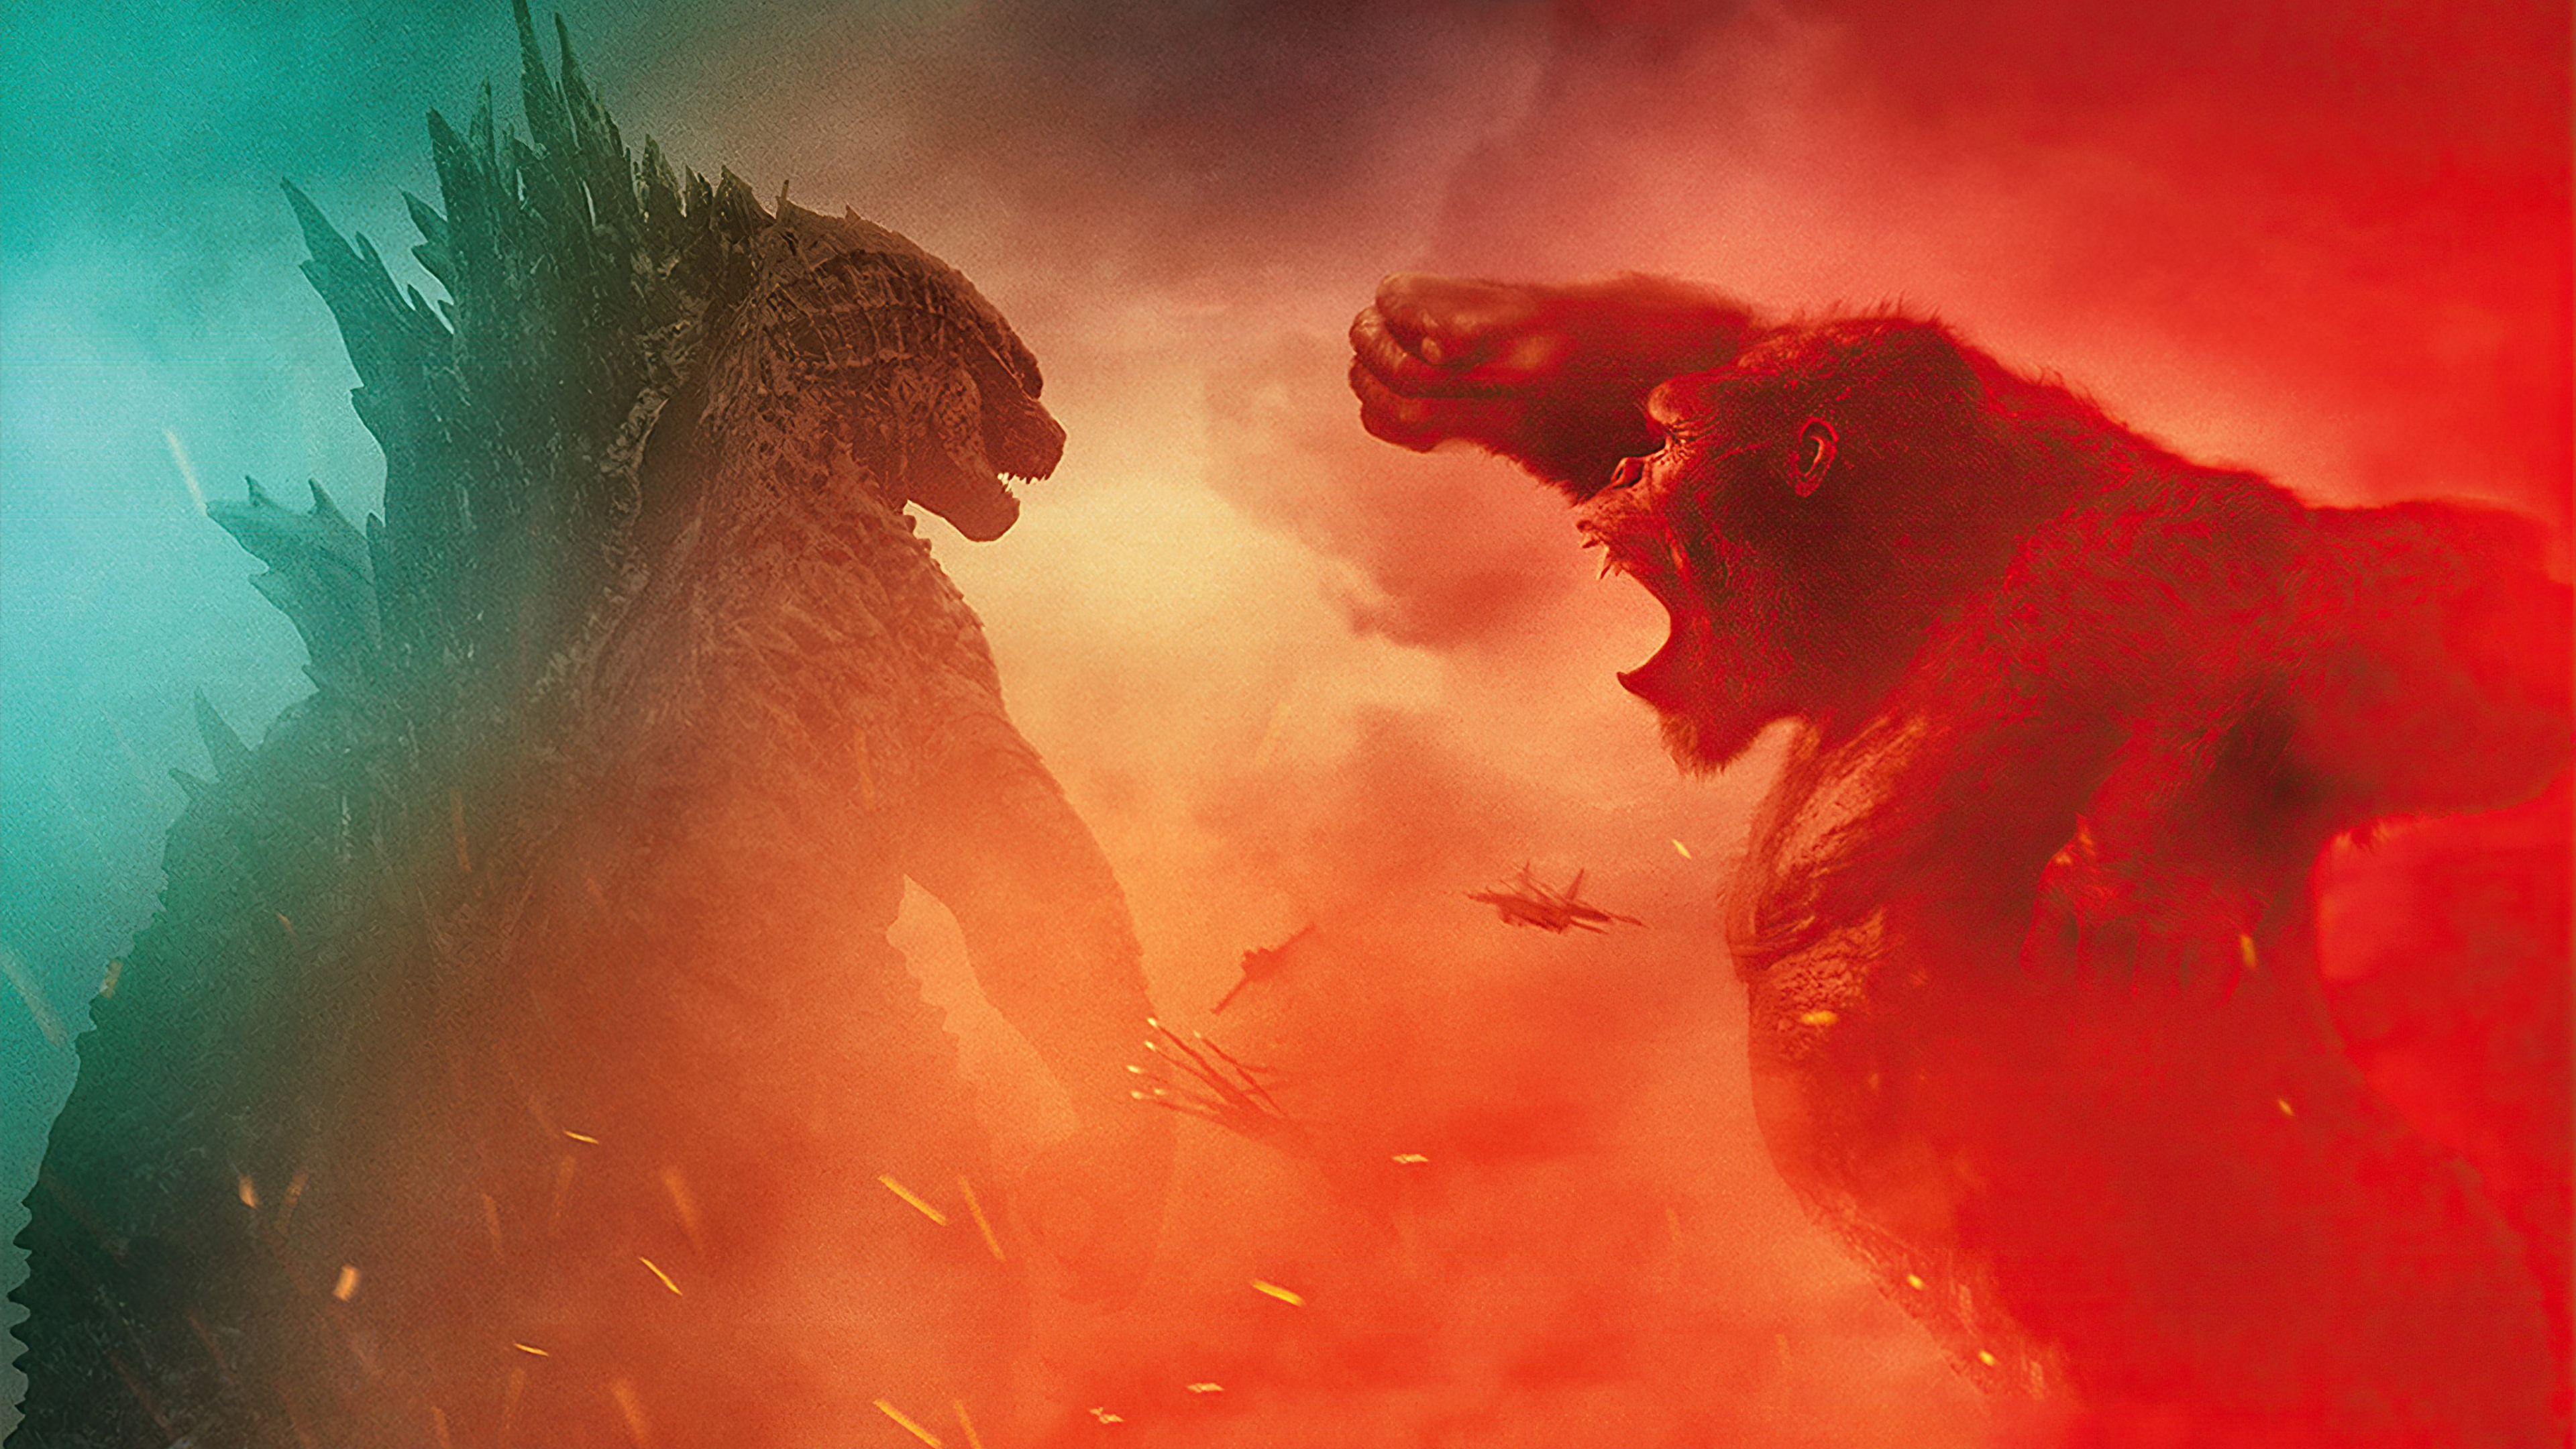 Đón xem hình ảnh liên quan đến cuộc đối đầu đầy kịch tính của Godzilla và Kong. Nơi mà bạn sẽ được tận mắt chứng kiến sức mạnh phi thường của hai siêu quái vật này và cảm nhận được nhịp điệu đánh nhau đầy sự căng thẳng.